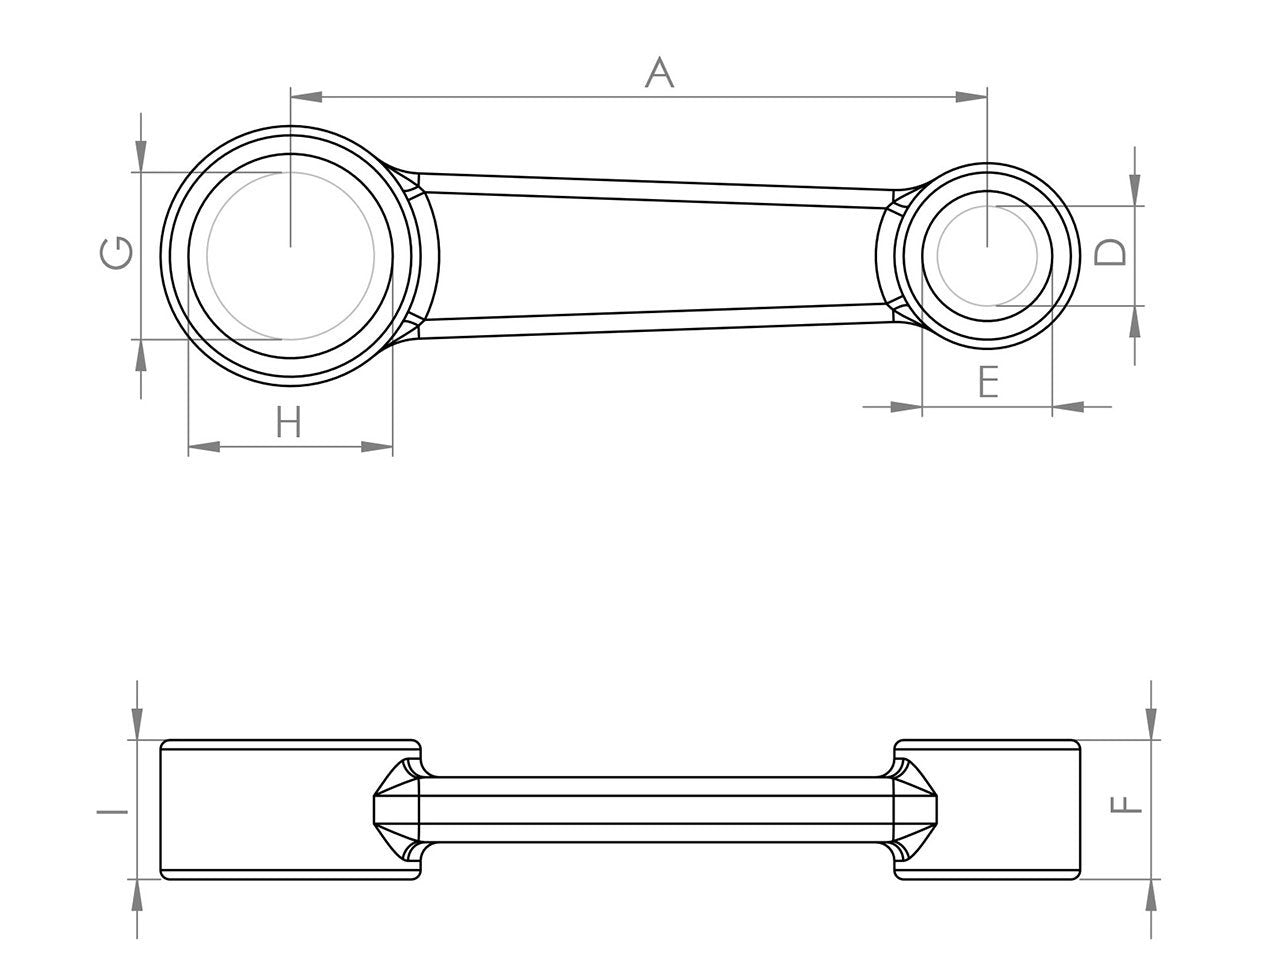 Zeichnung Barikit Pleuel für einen Kawasaki KX 60 Motor mit Bemaßung.